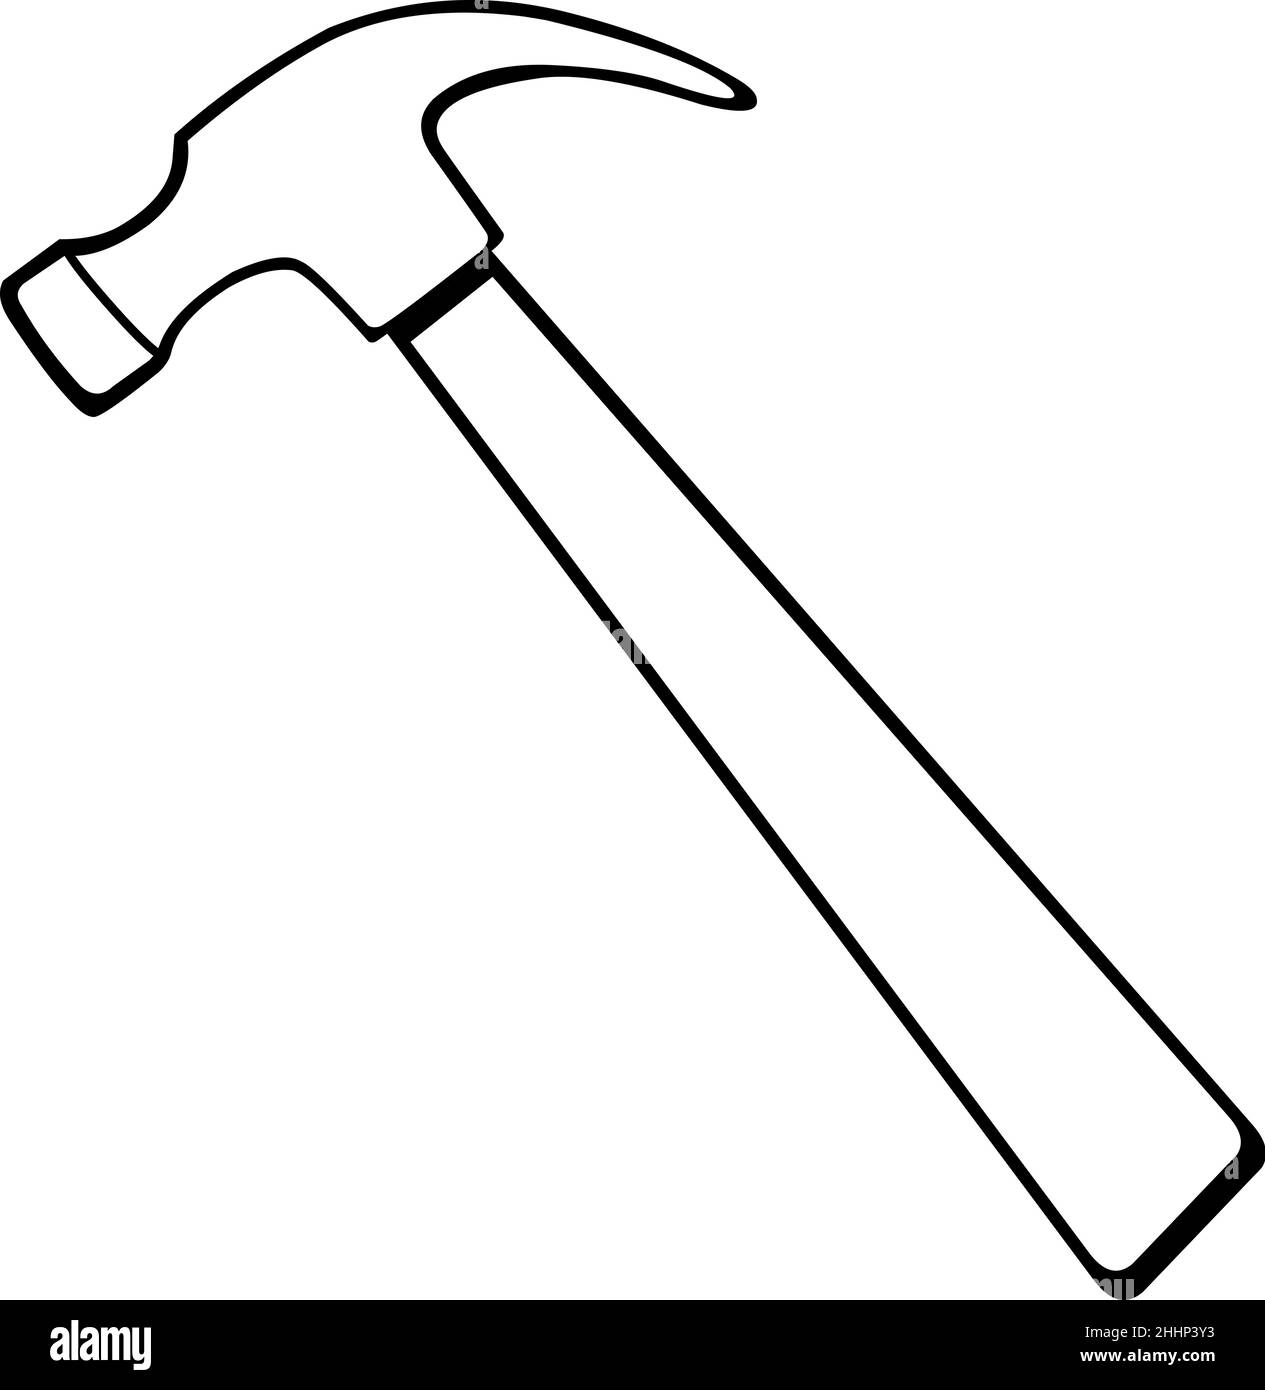 Vektordarstellung eines Hammers in schwarz-weiß gezeichnet Stock Vektor